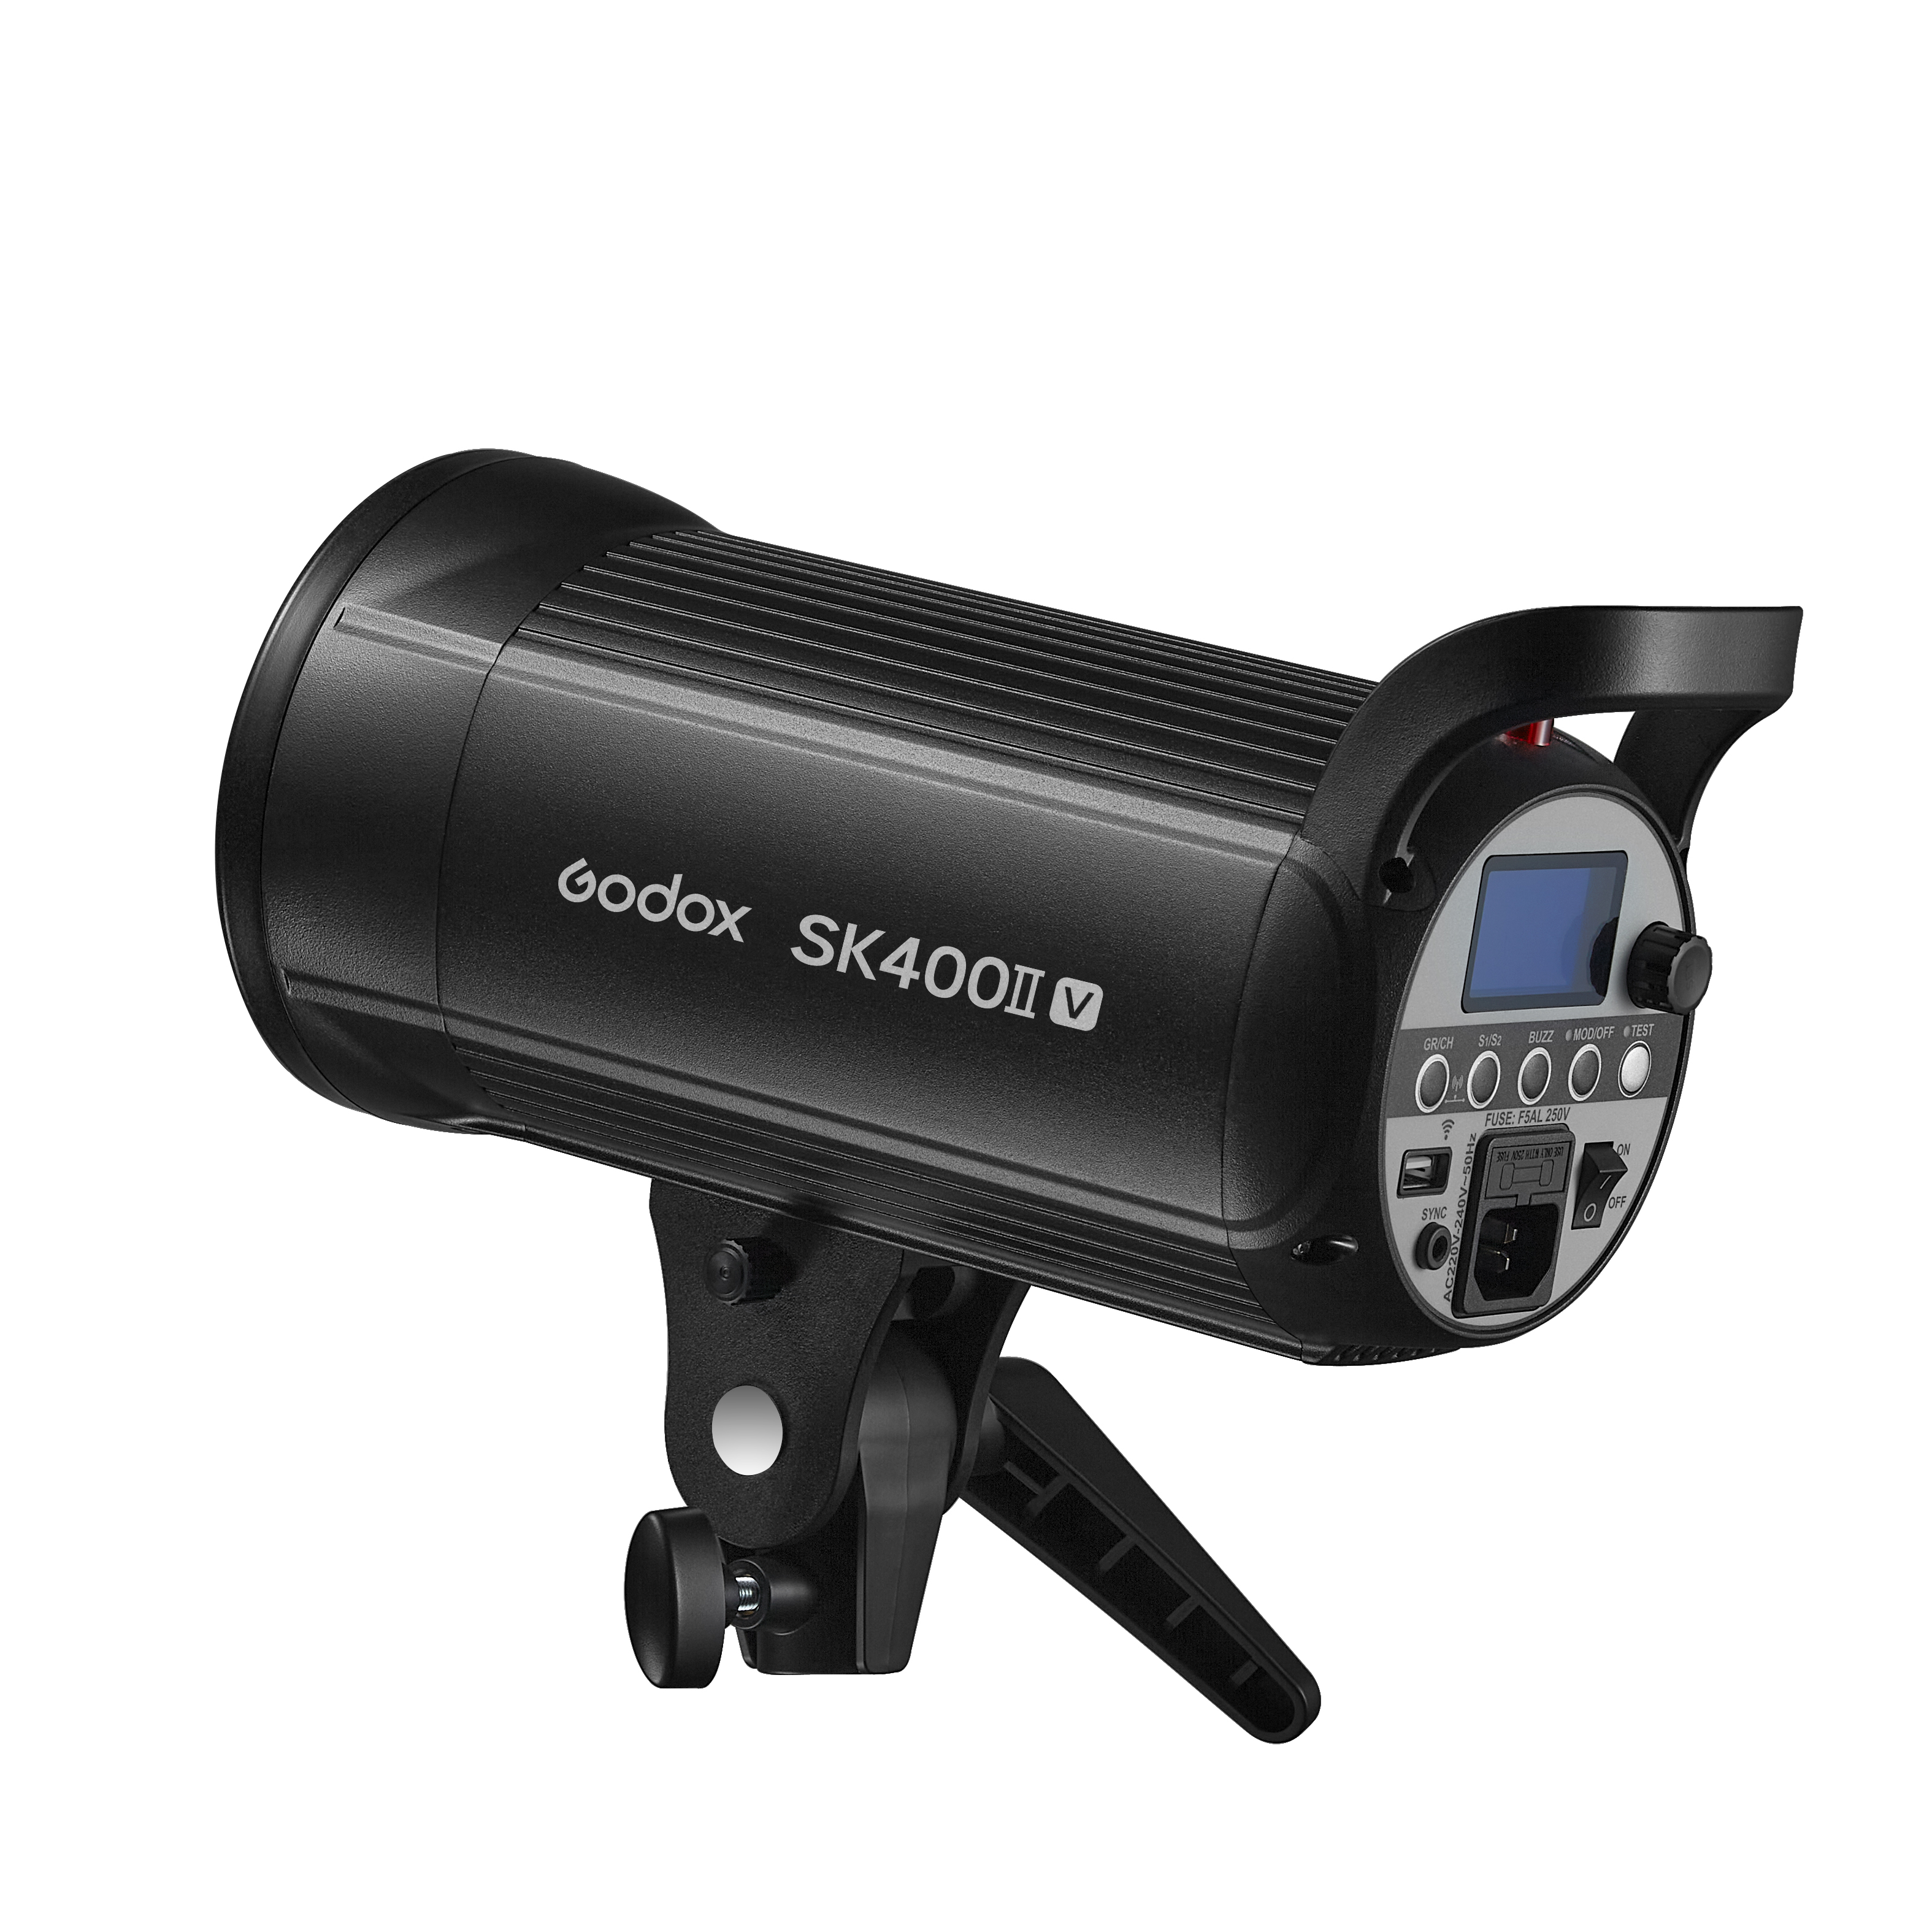    Godox SK400II-V   Ultra-mart